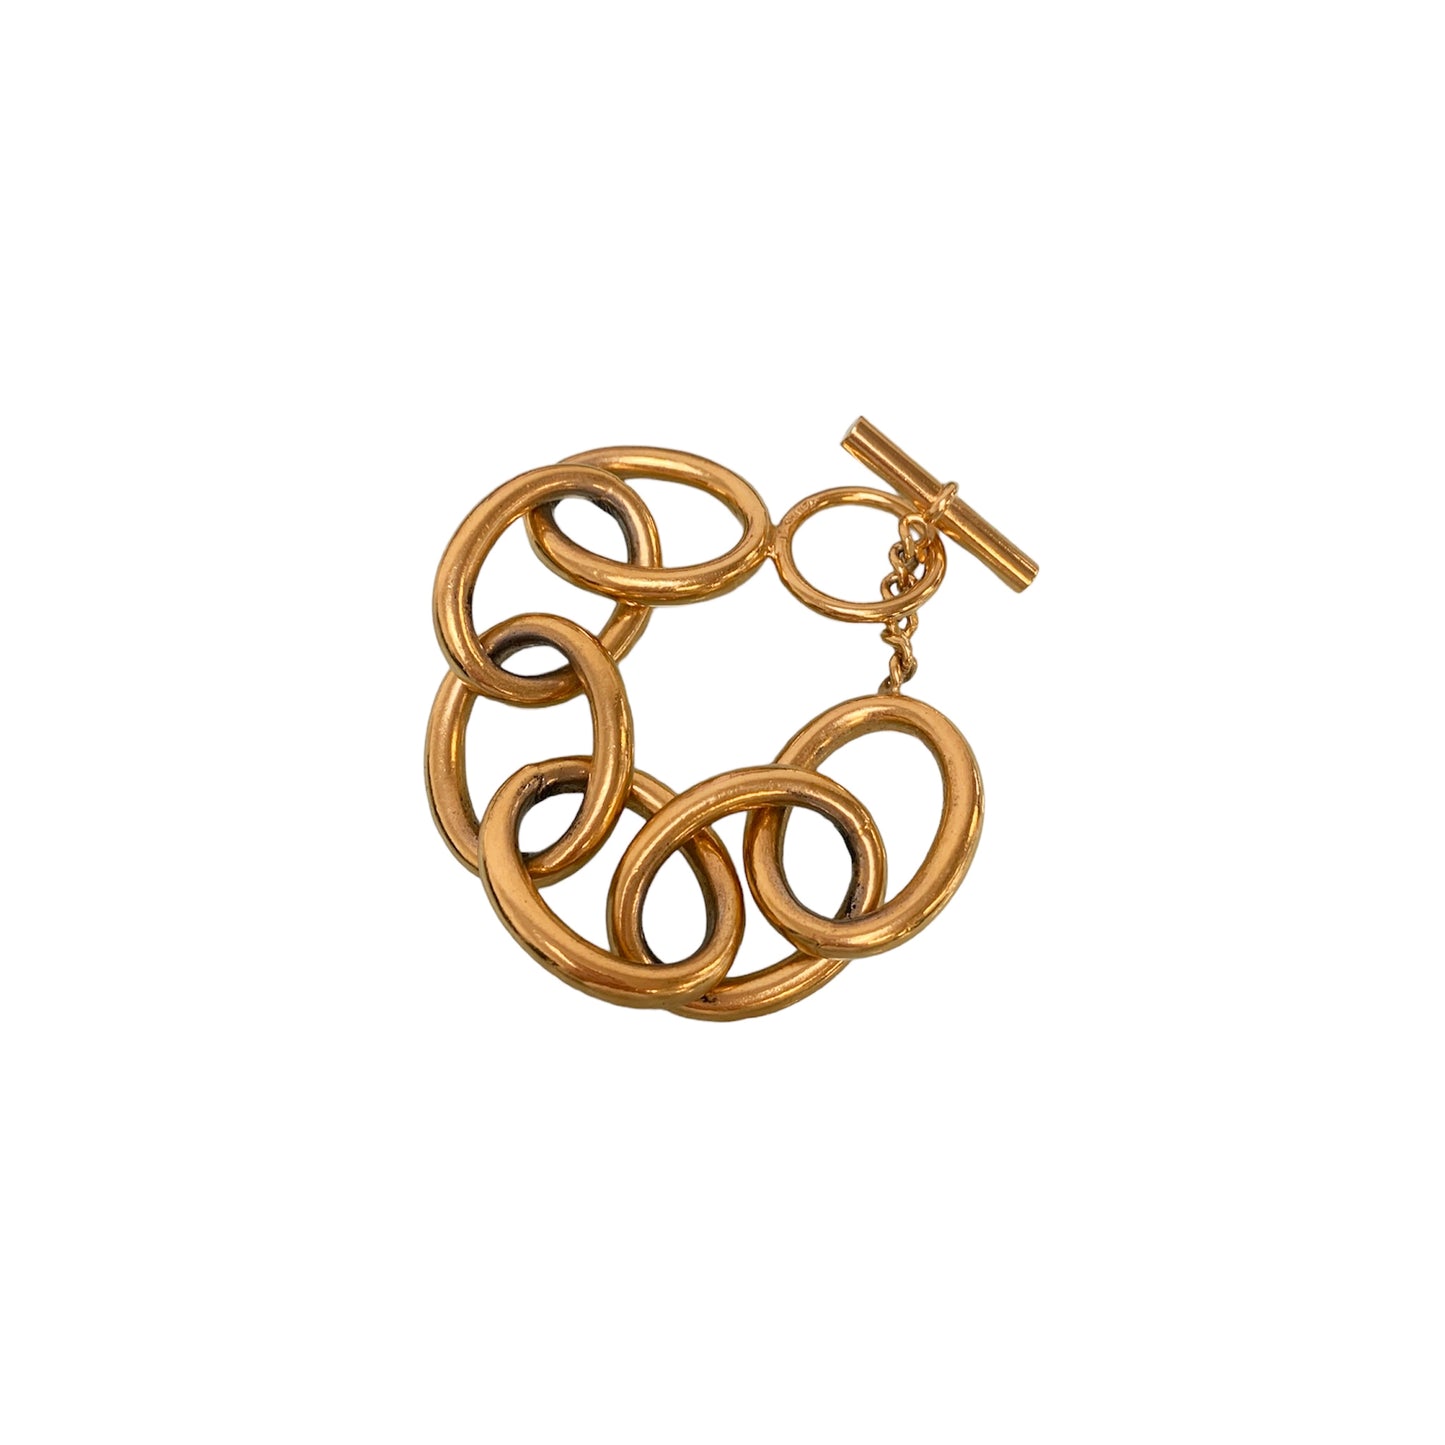 Vintage Chanel Gold Chain Link Bracelet